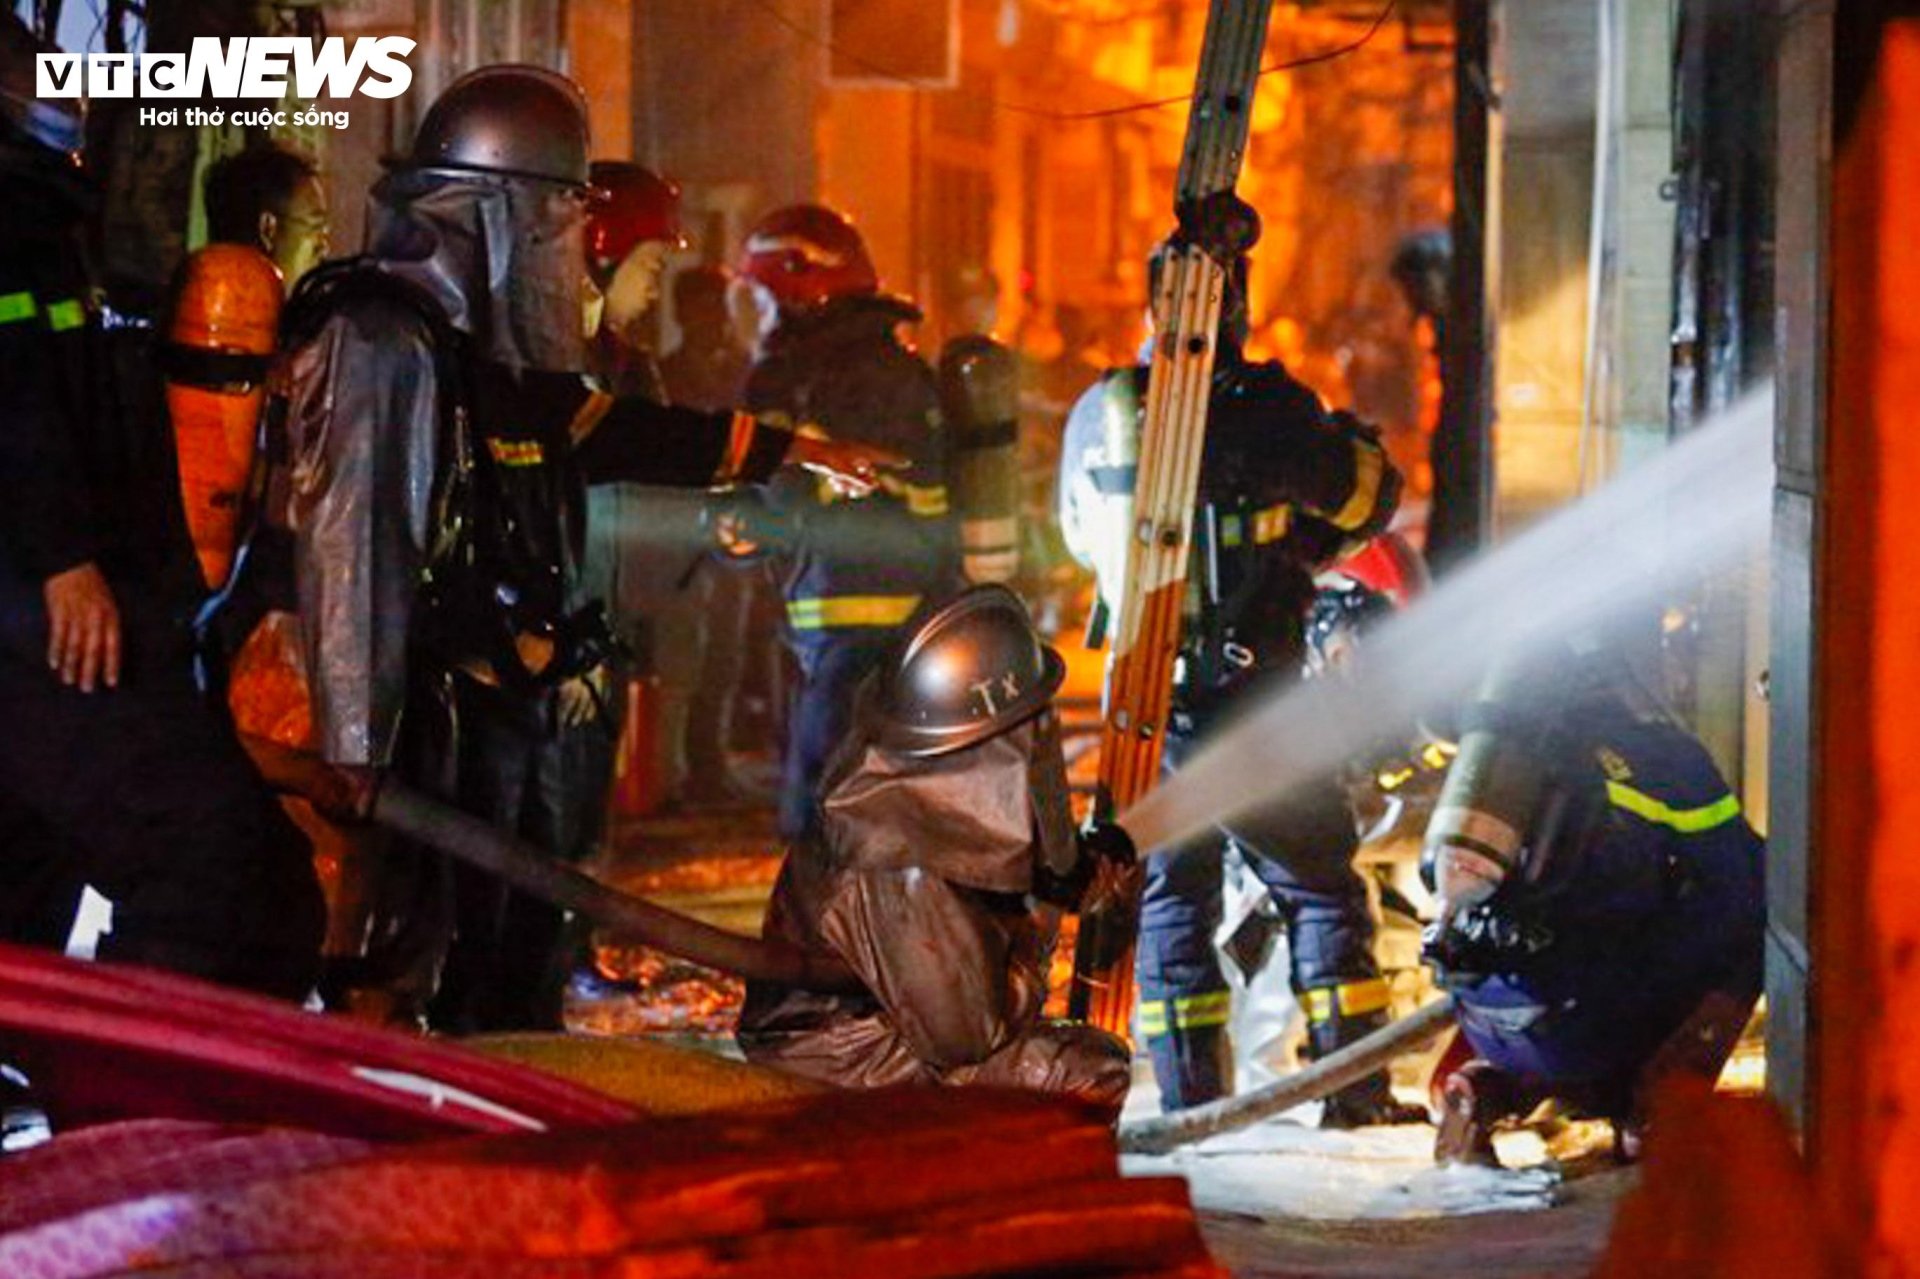 Hiện trường vụ cháy chung cư mini ở Hà Nội trong đêm, nhiều người ngất xỉu - Ảnh 7.